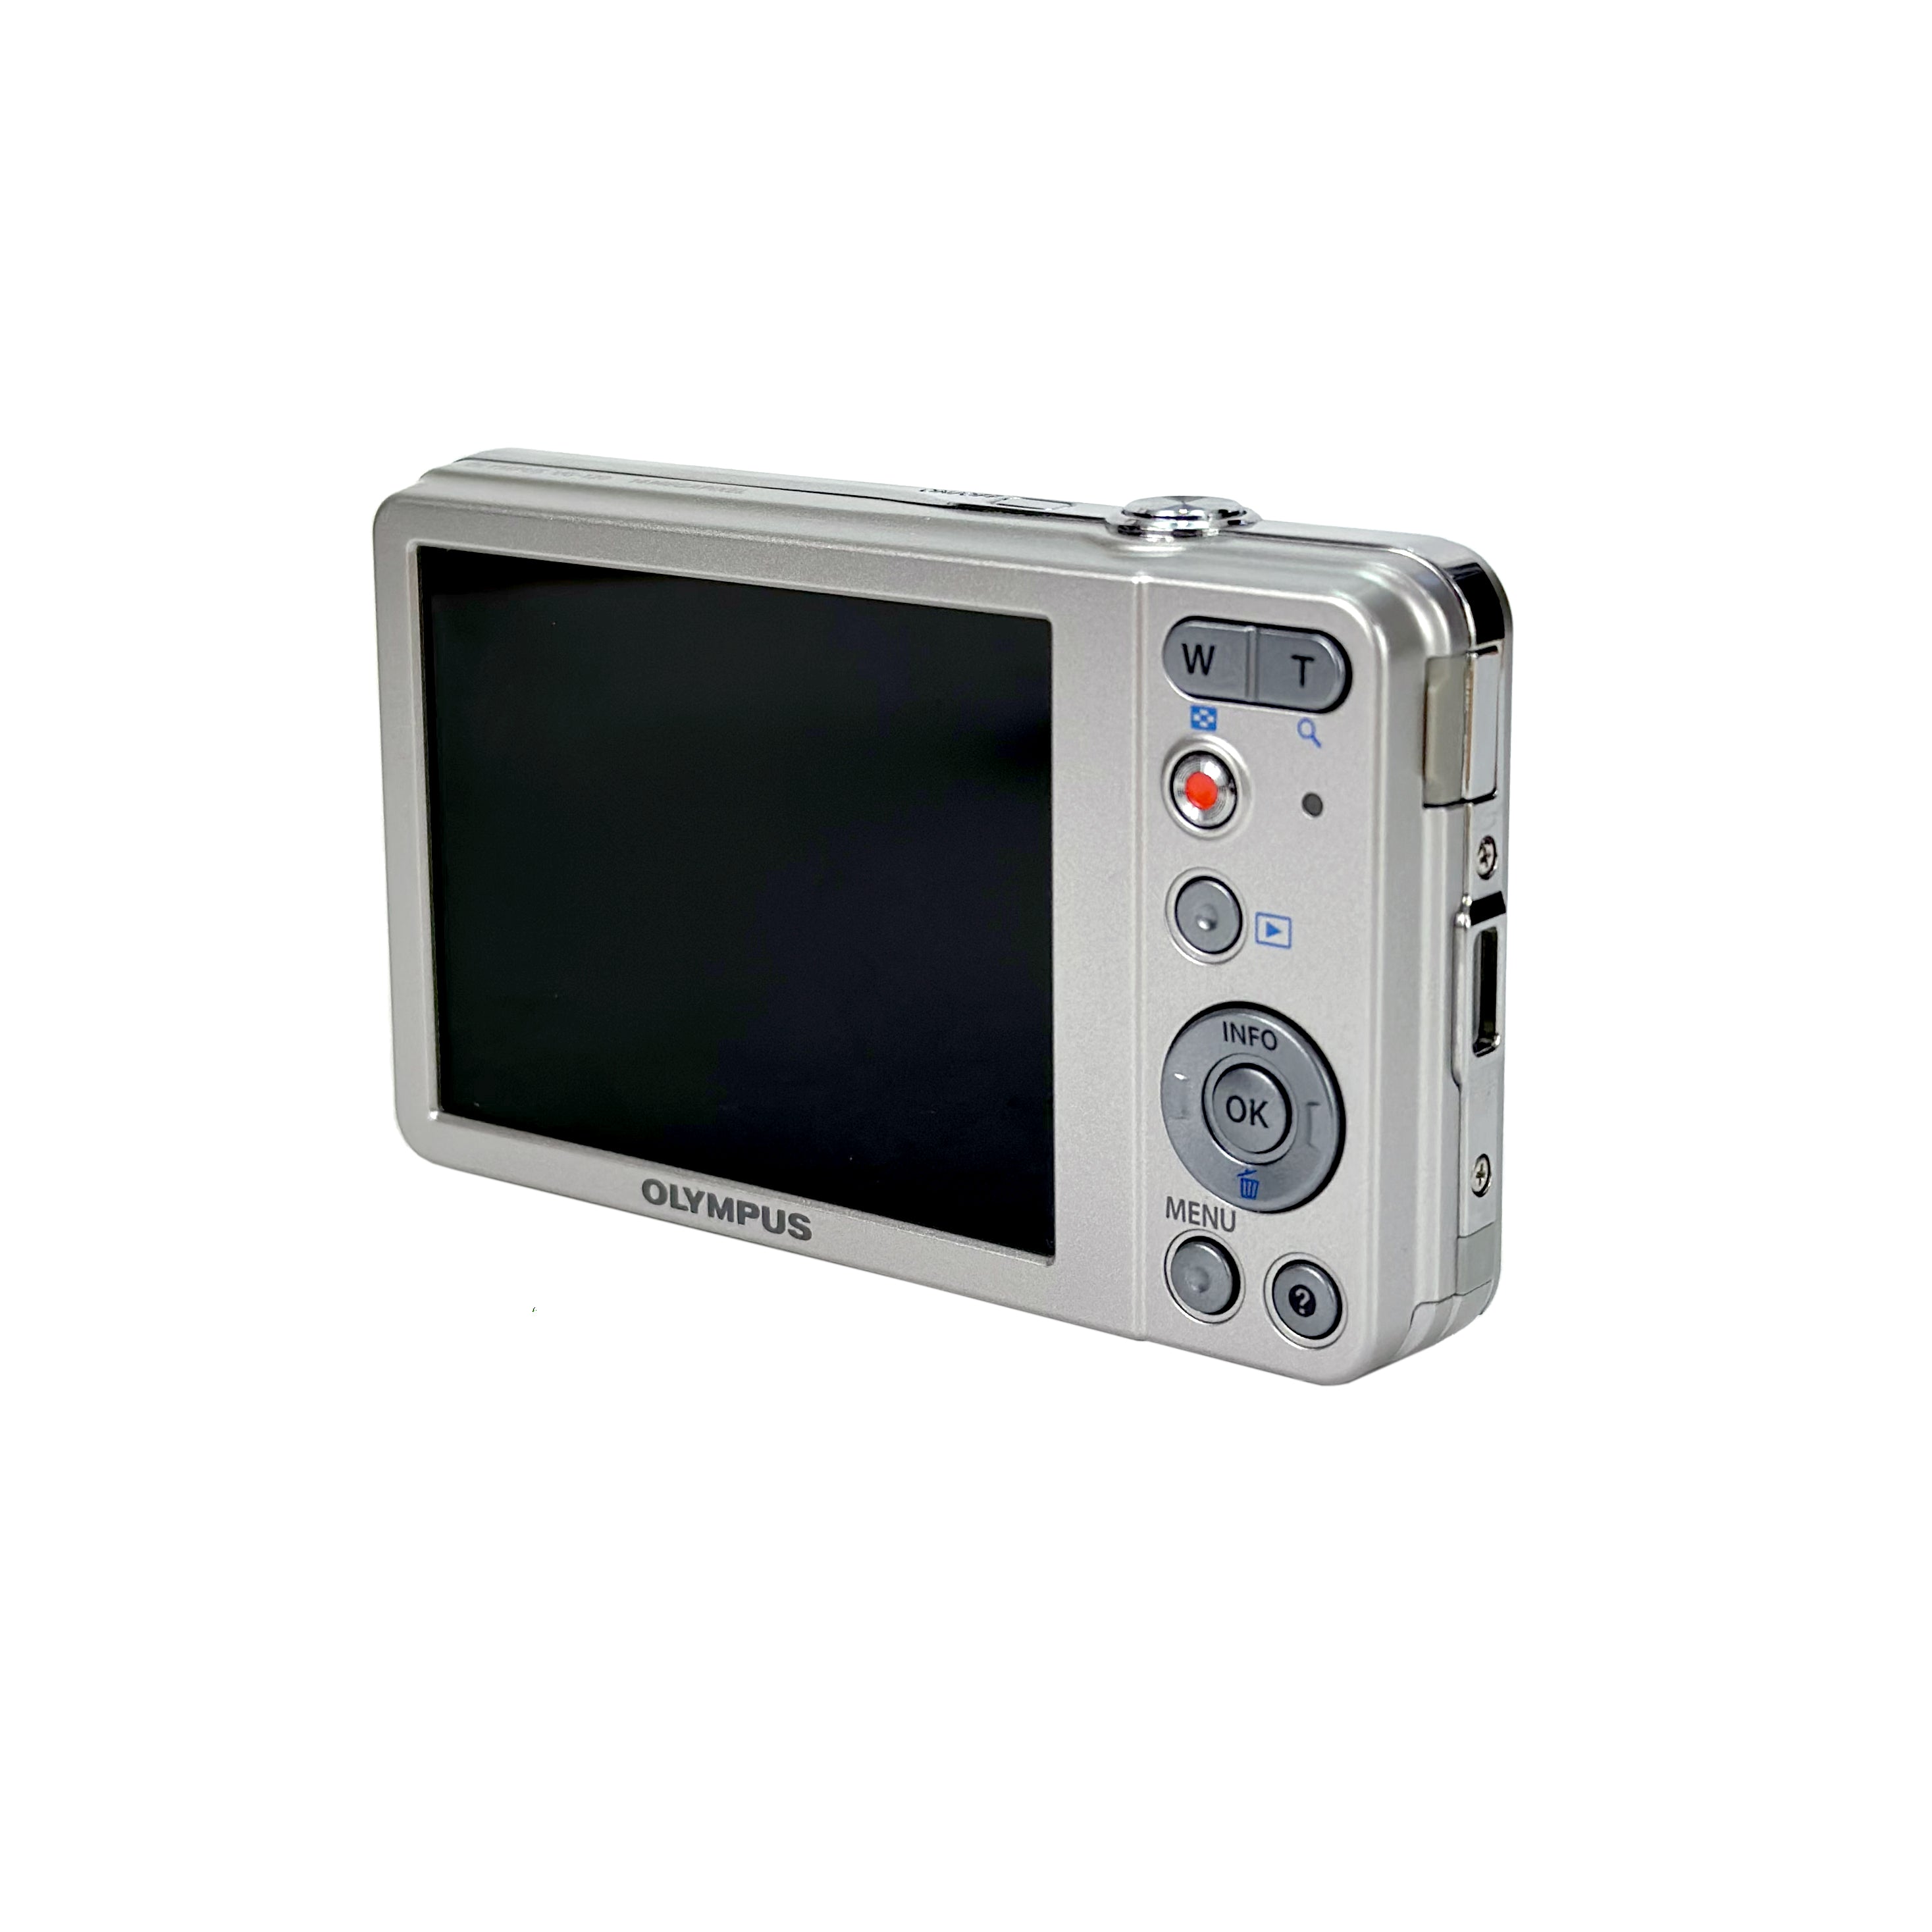 OLYMPUS デジタルカメラ VG-120 1400万画素 広角26mm 光学5倍ズーム 3.0型液晶 